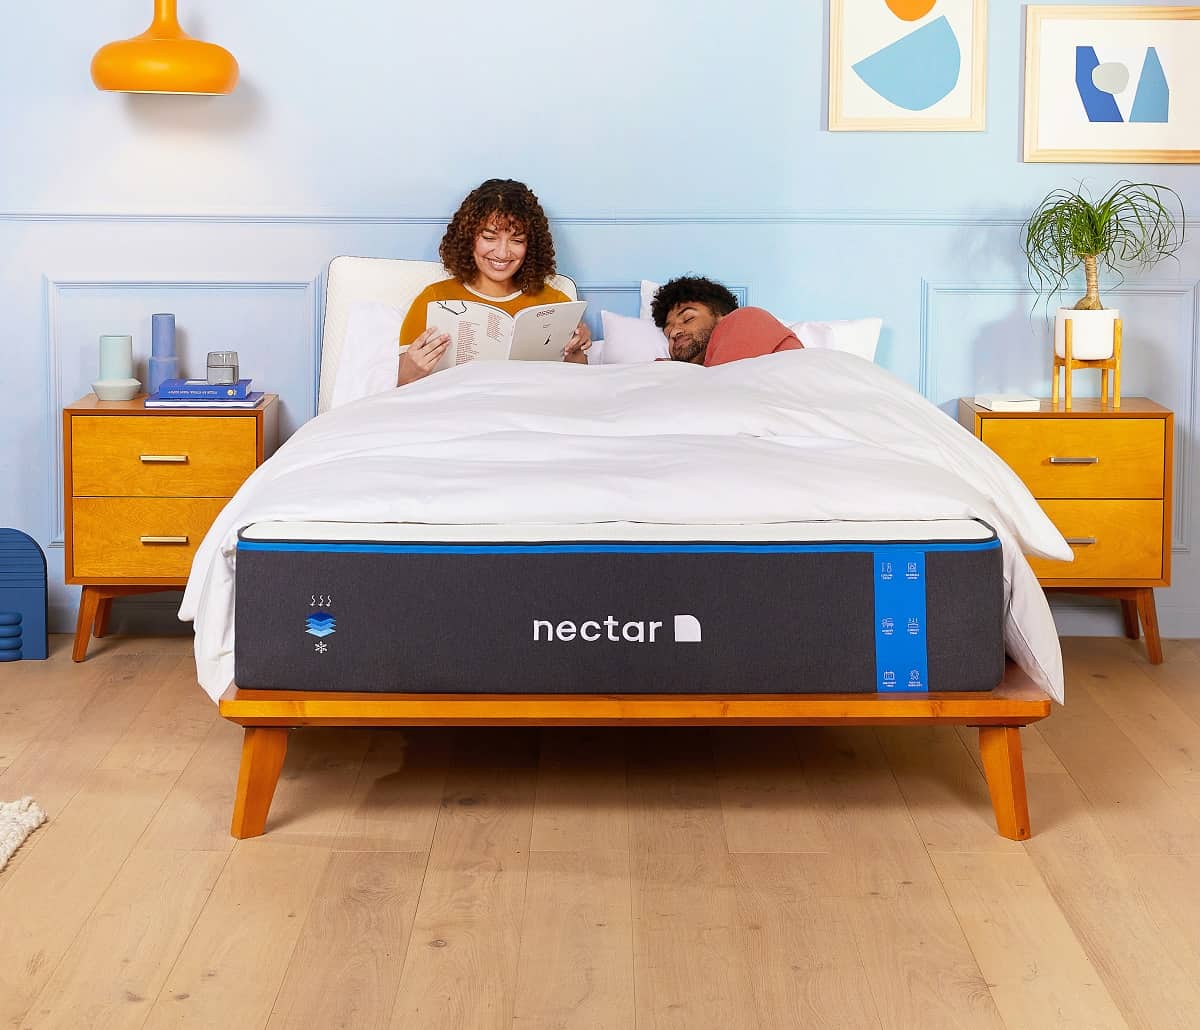 nectar mattress review uk